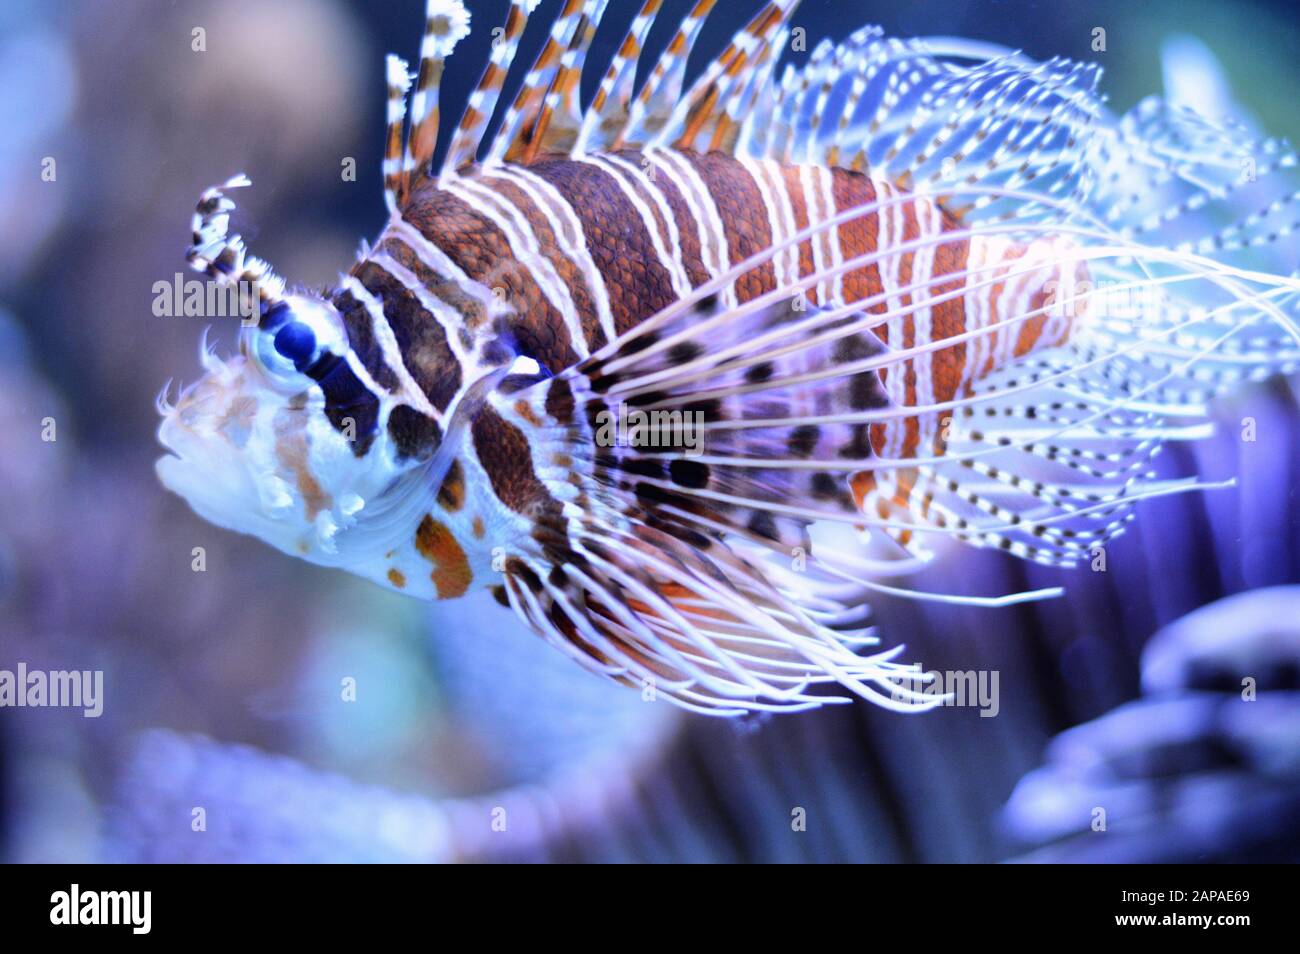 Belle et dangereuse lionfish, c'est un poisson d'eau salée. C'est un poisson venimeux. Banque D'Images